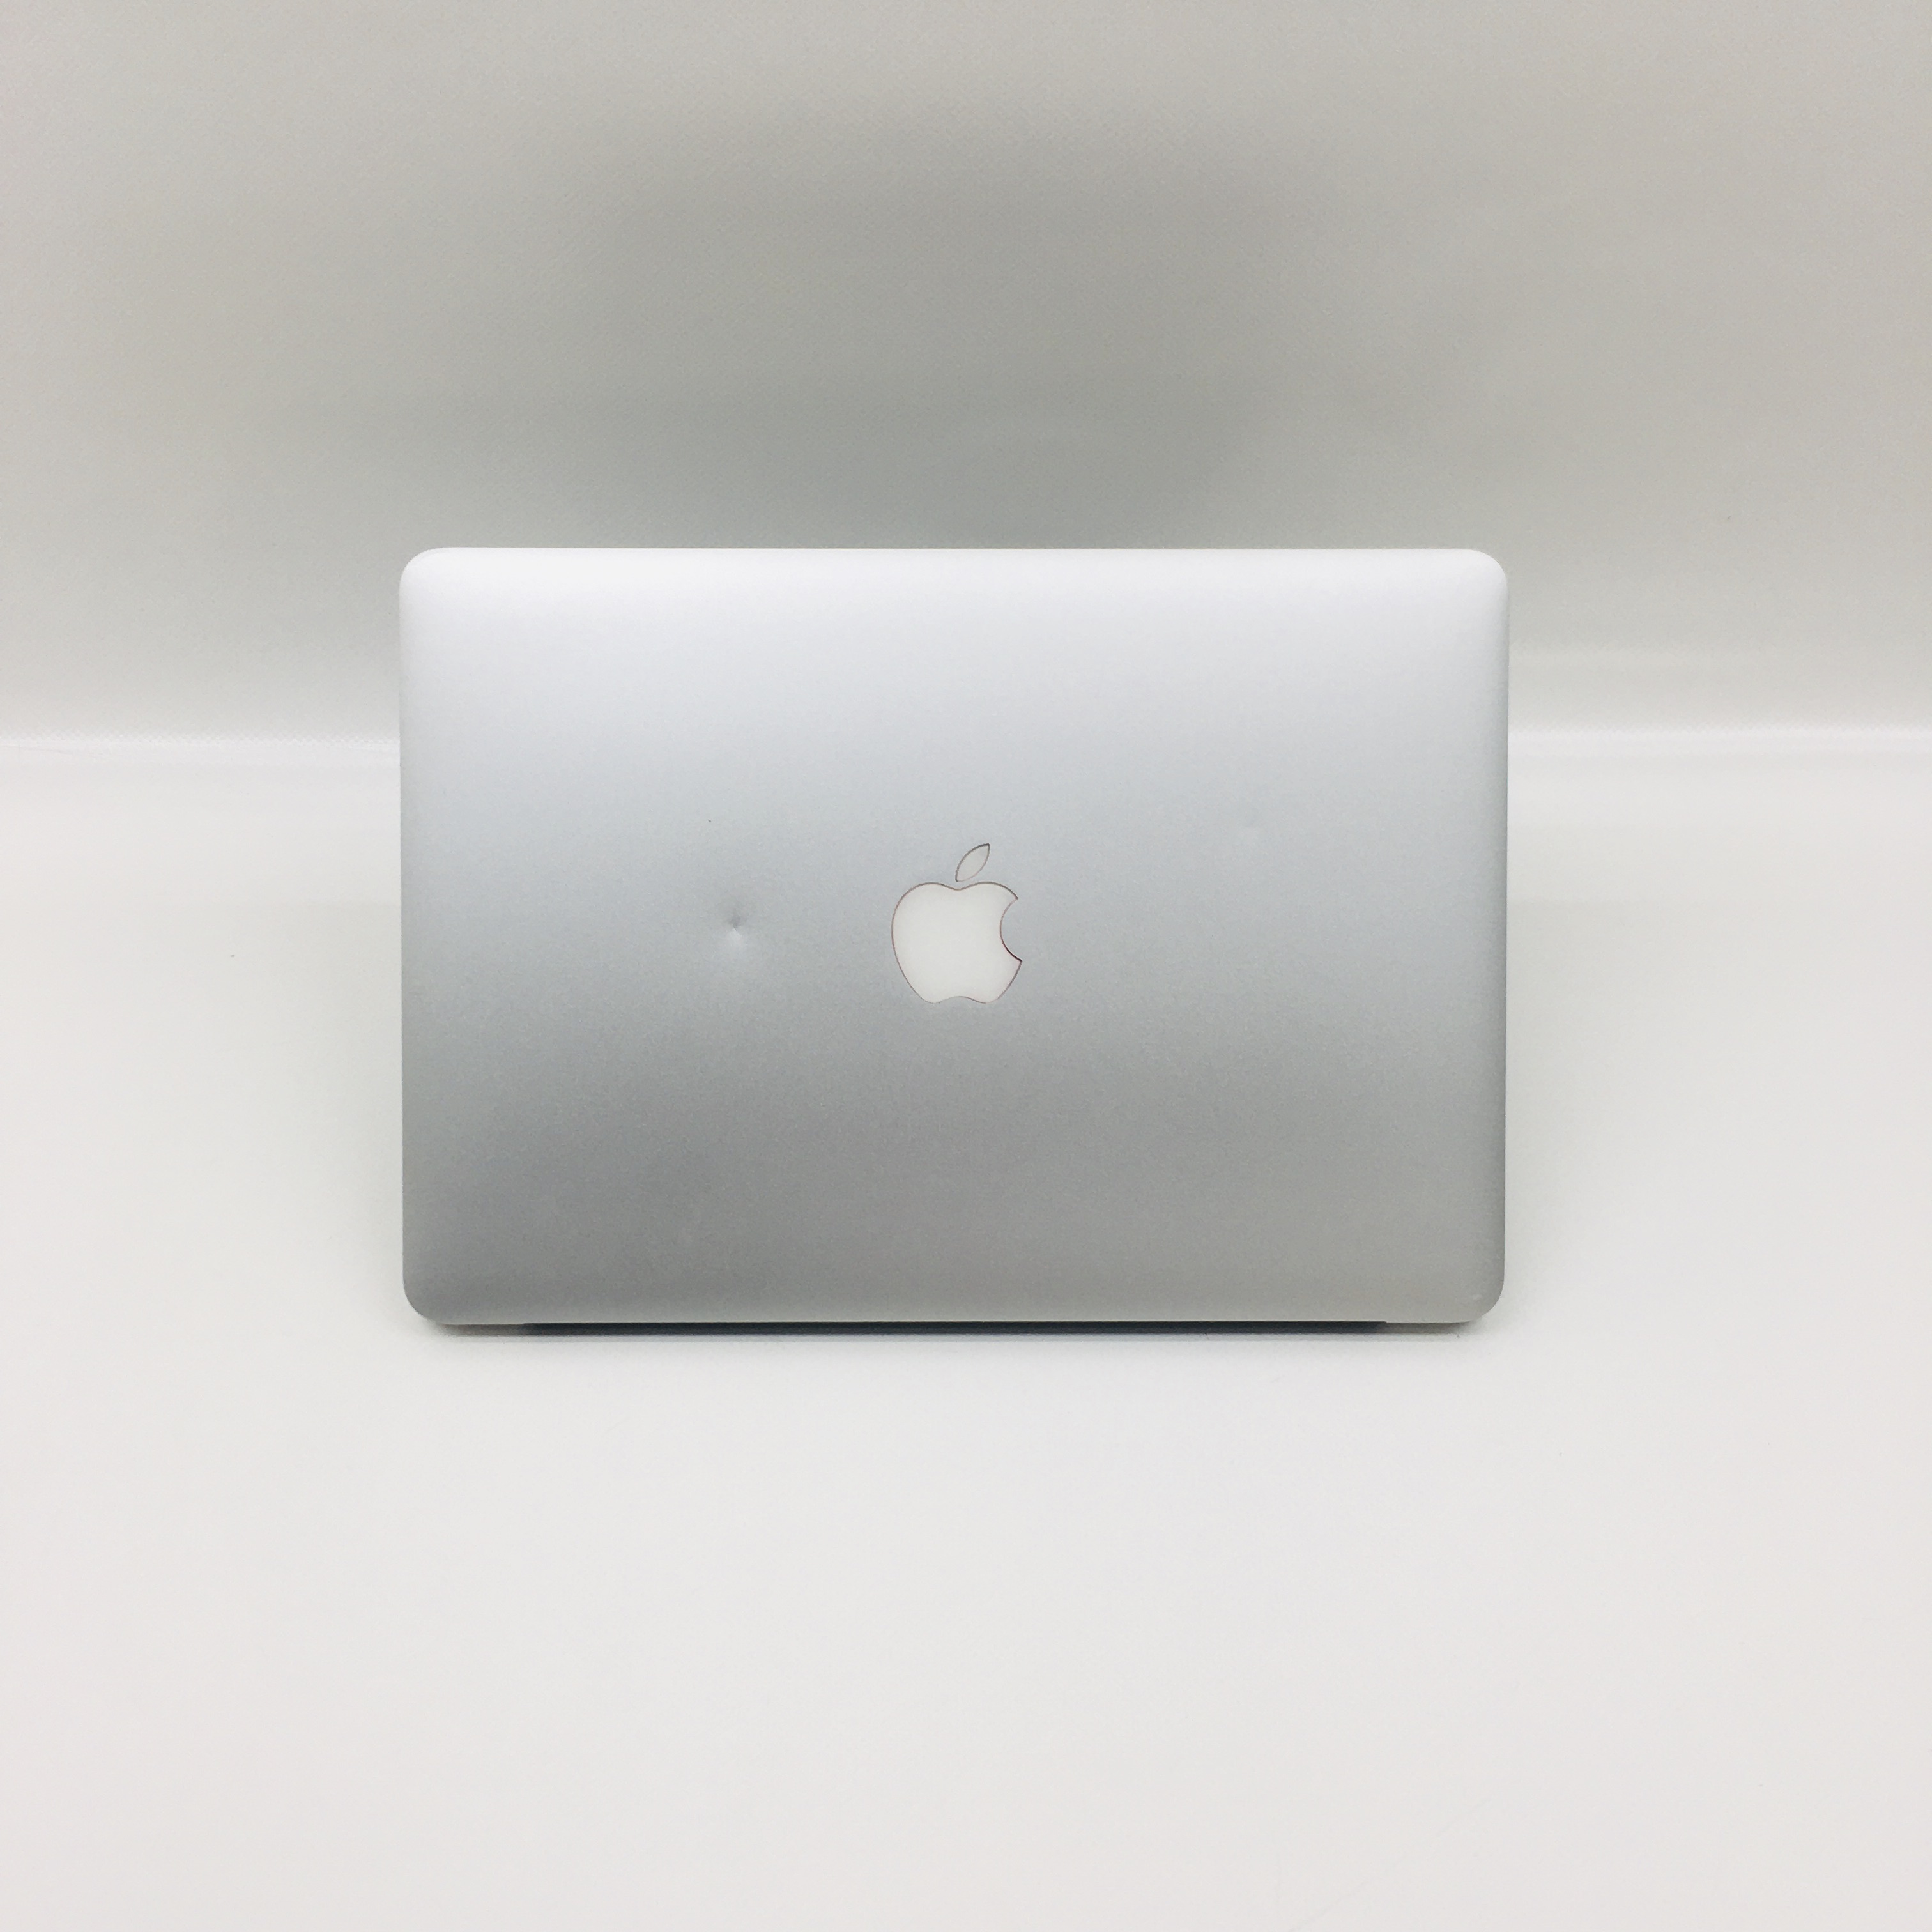 MacBook Air 11" Mid 2013 (Intel Core i5 1.3 GHz 4 GB RAM 128 GB SSD), Intel Core i5 1.7 GHz, 4 GB RAM, 256 GB SSD, image 4